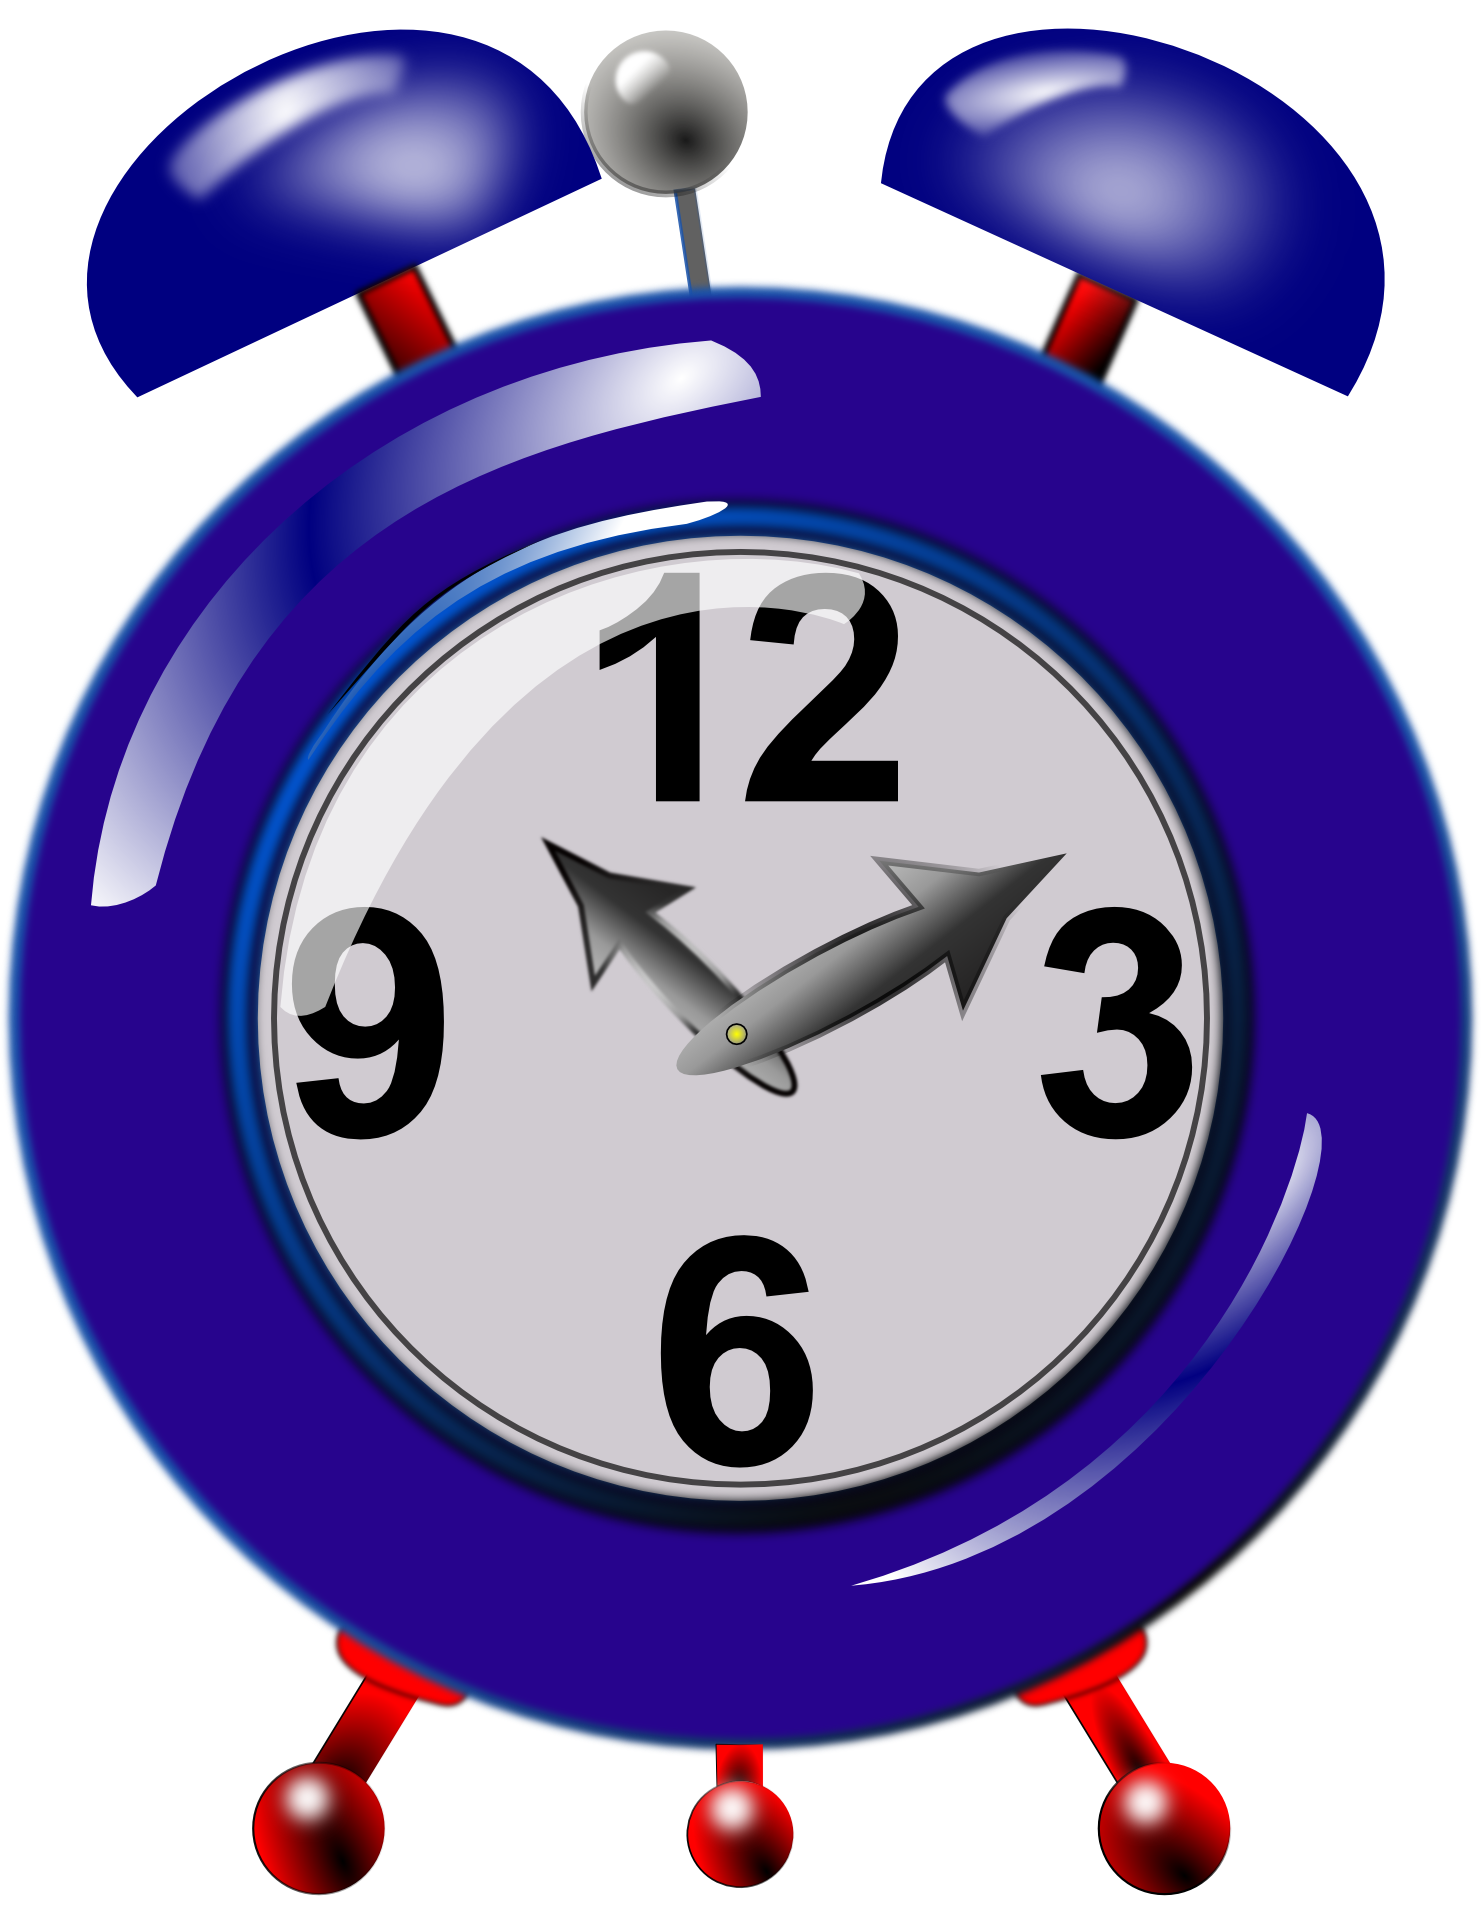 Blue Big Alarm Clock Illustration Free Image Download